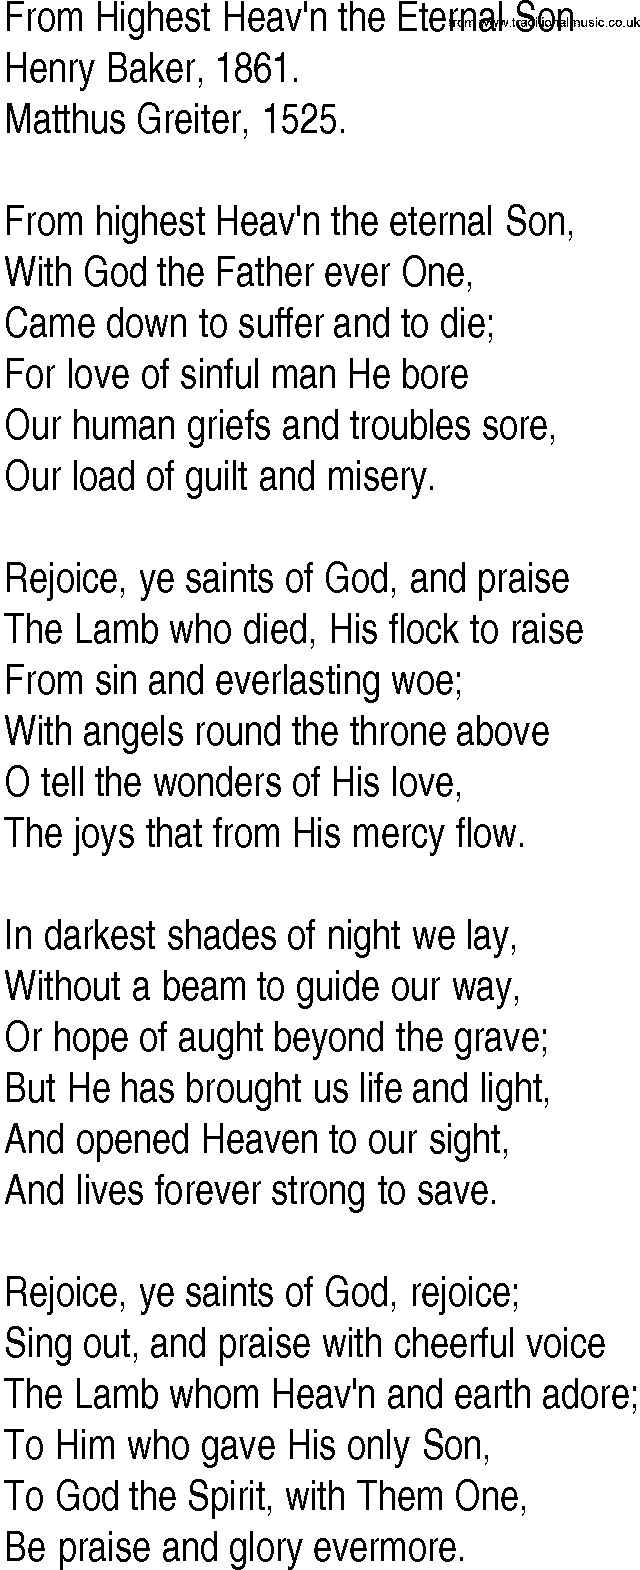 Hymn and Gospel Song: From Highest Heav'n the Eternal Son by Henry Baker lyrics